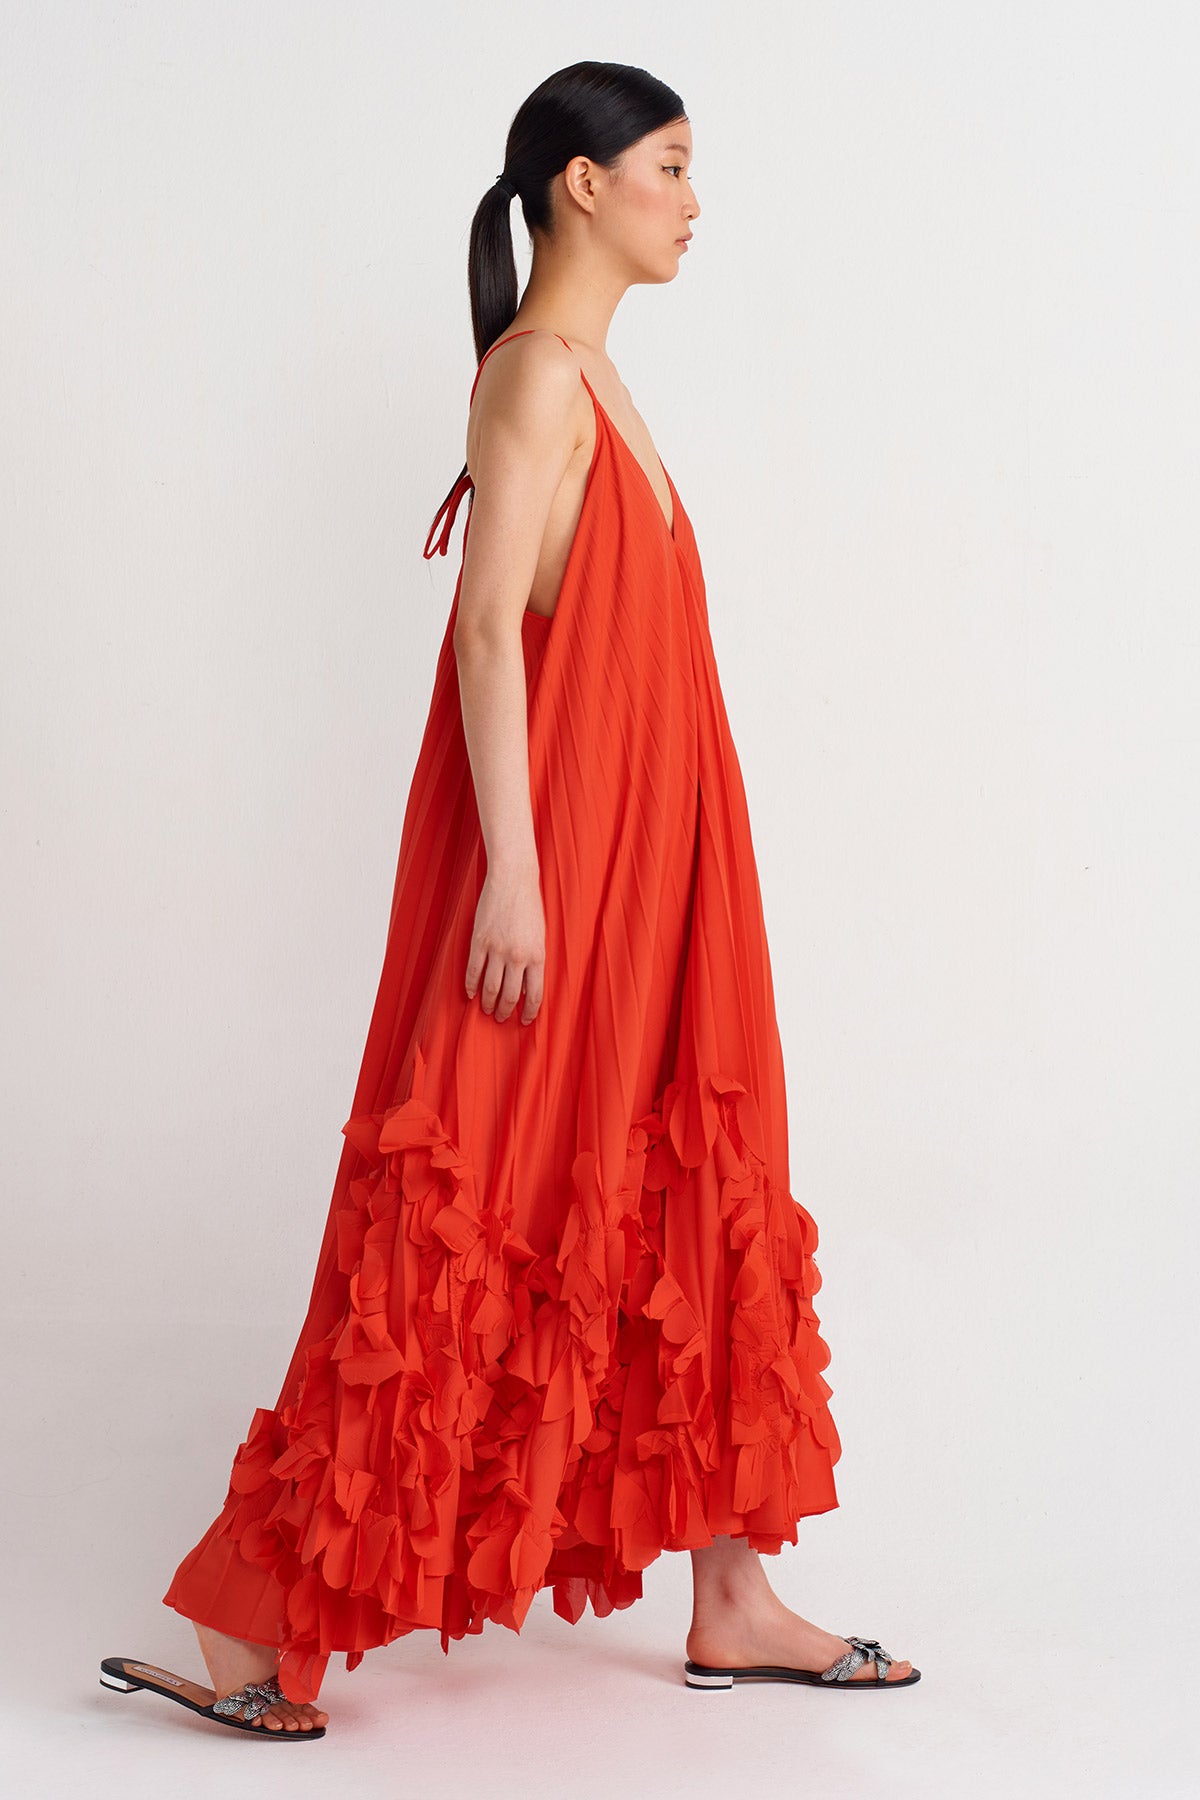 Kırmızı Etekleri Çiçek Motifli Plisoley Elbise-Y244014125